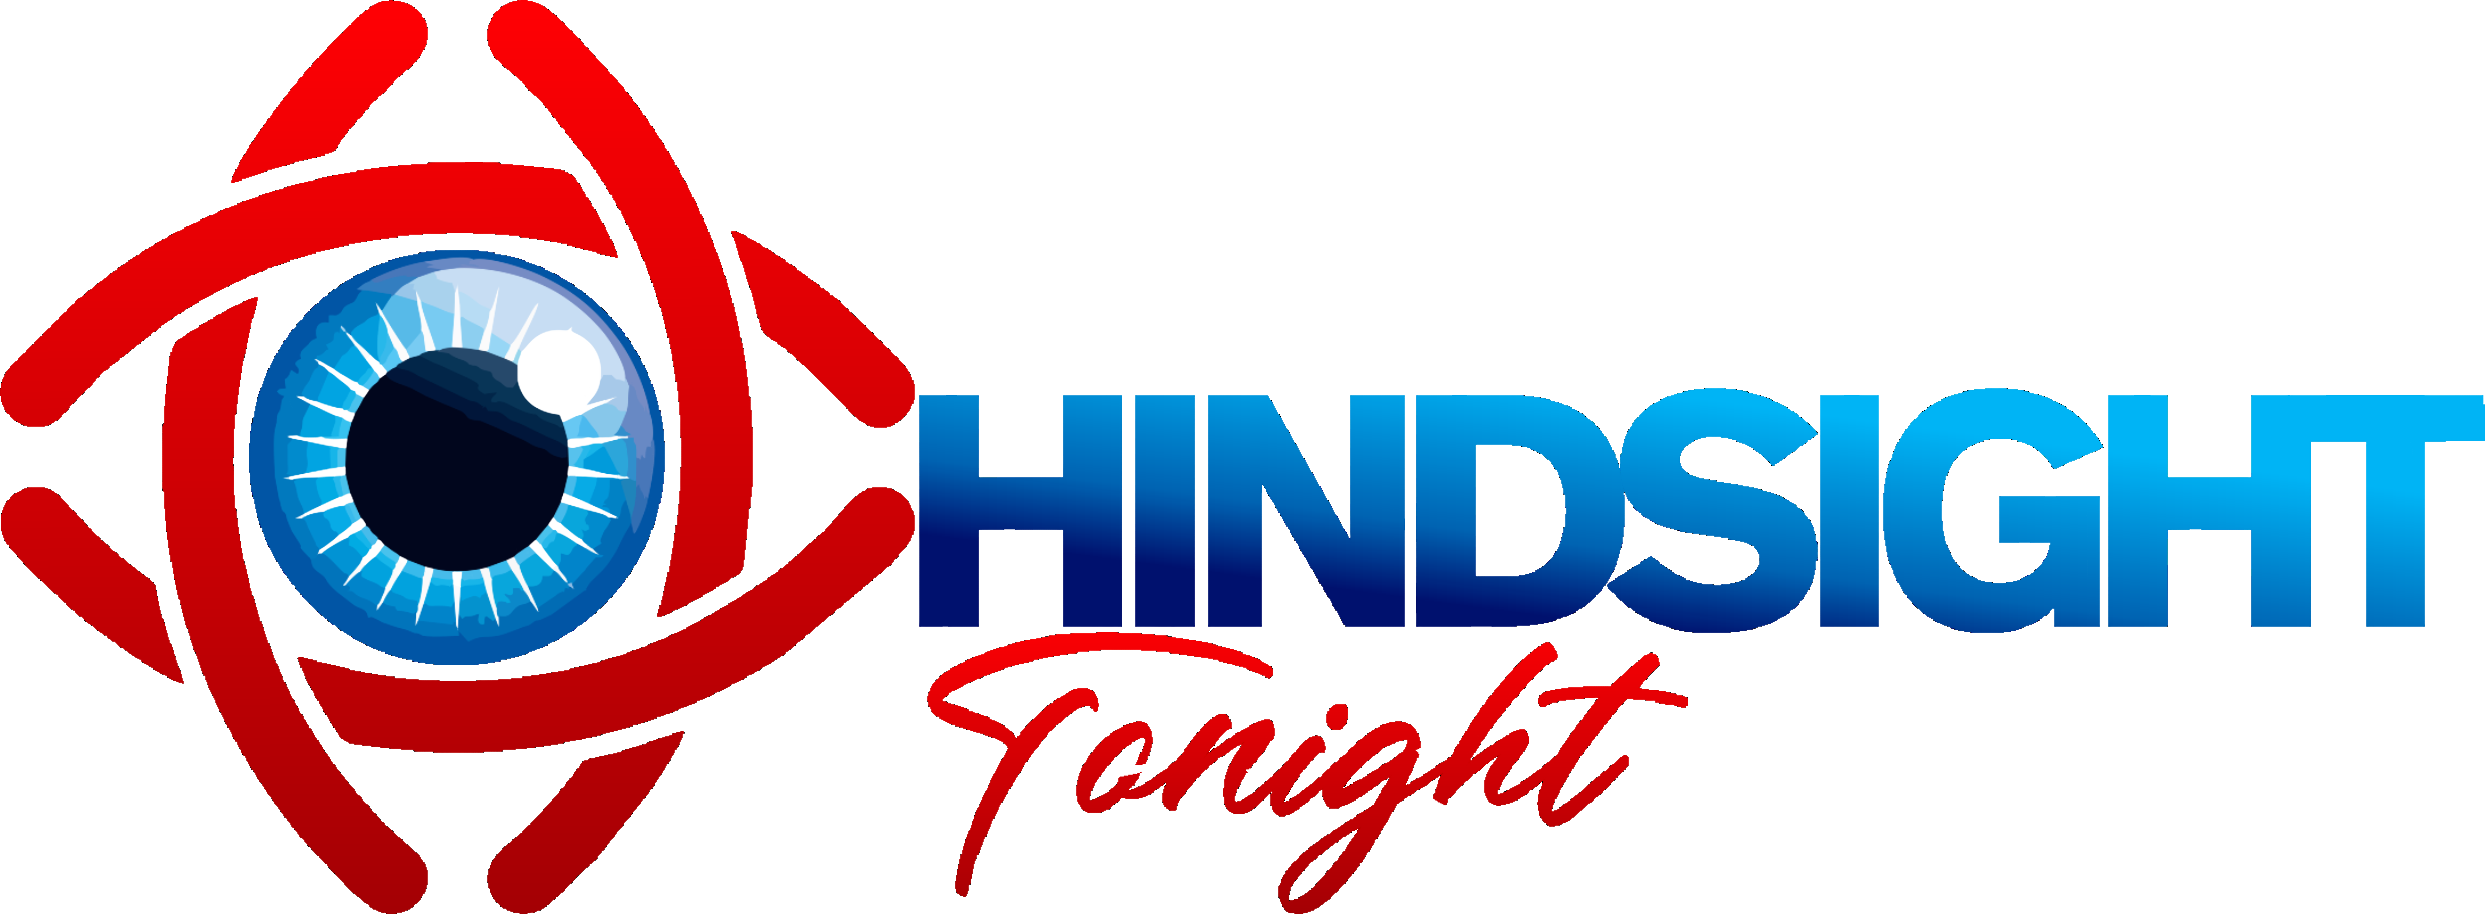 hindsight-logo.png